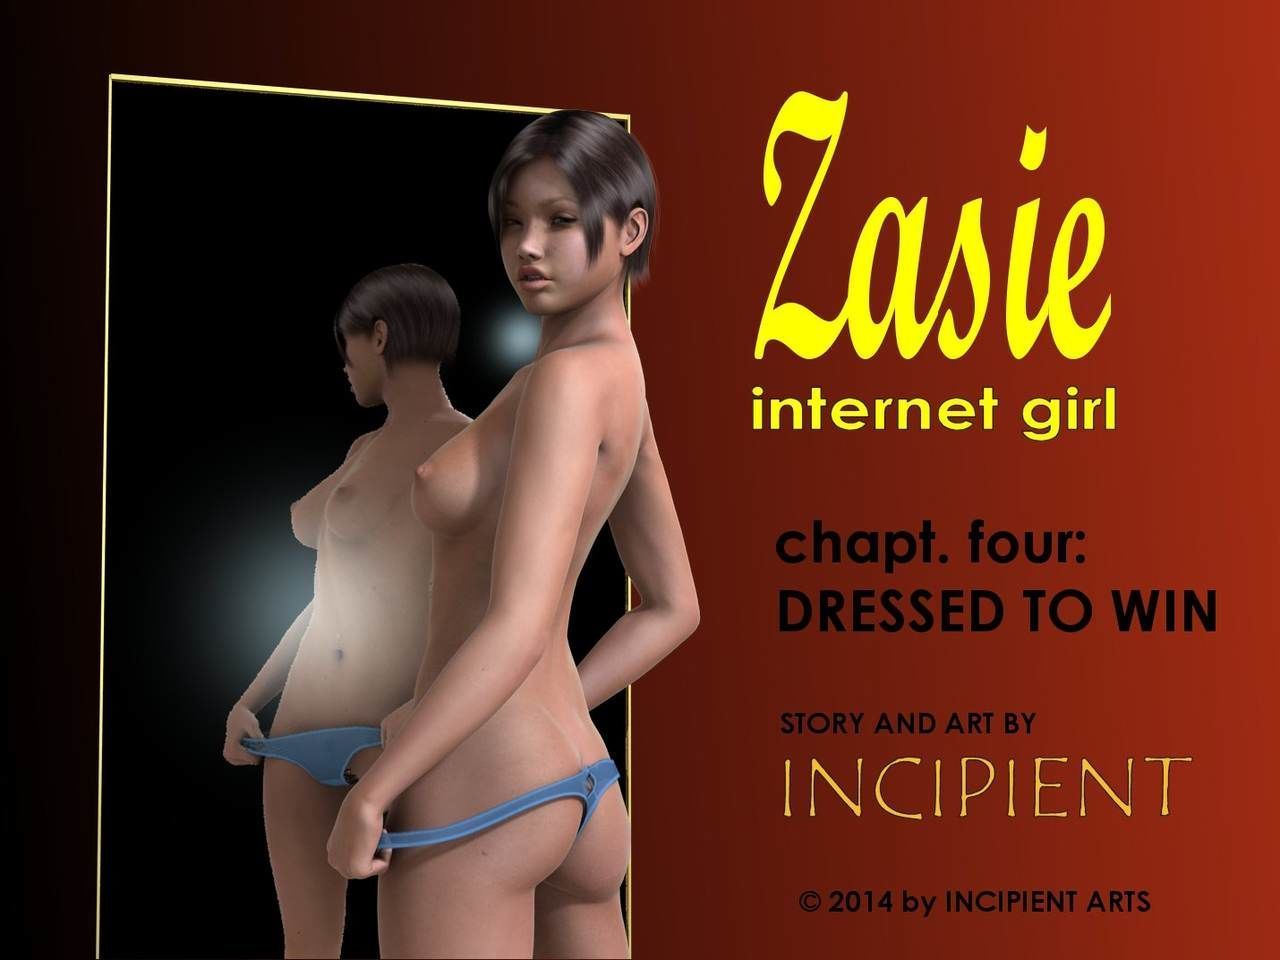 [incipient] zasie 互联网 女孩 ch. 4: 穿着 要 赢得